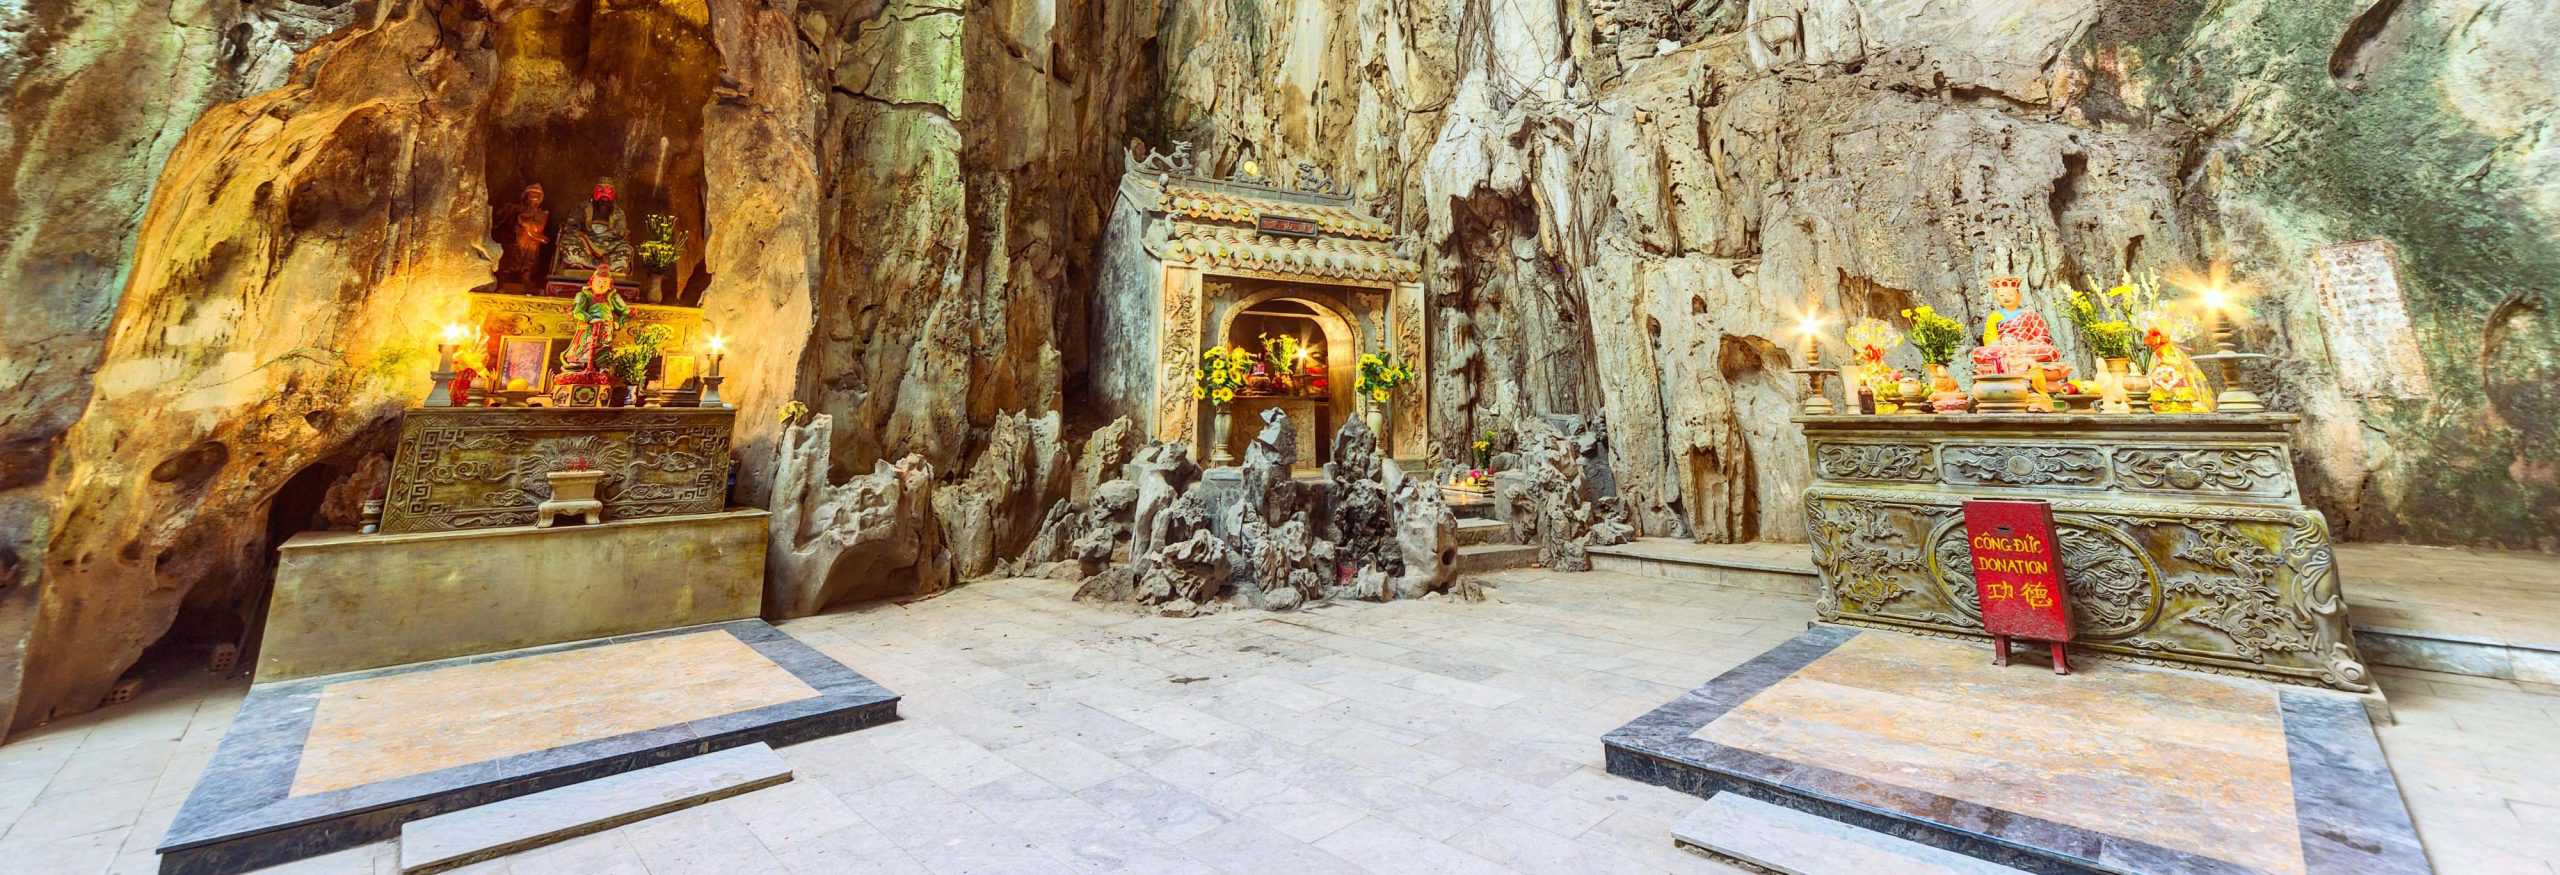 Travel Guide toHoa Nghiem Cave in Danang, Vietnam